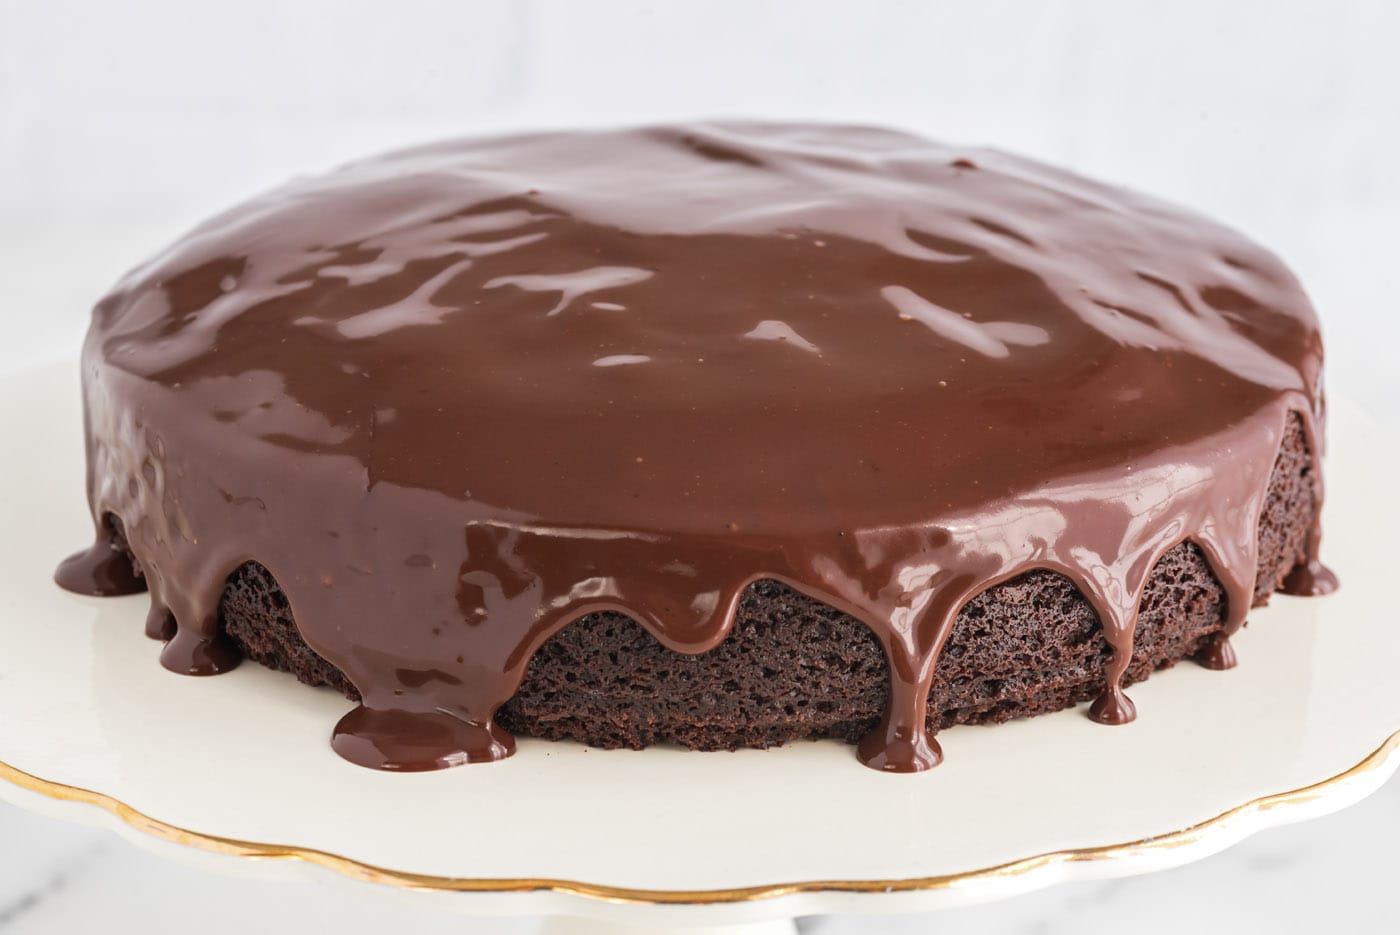 Dark chocolate cake with ganache